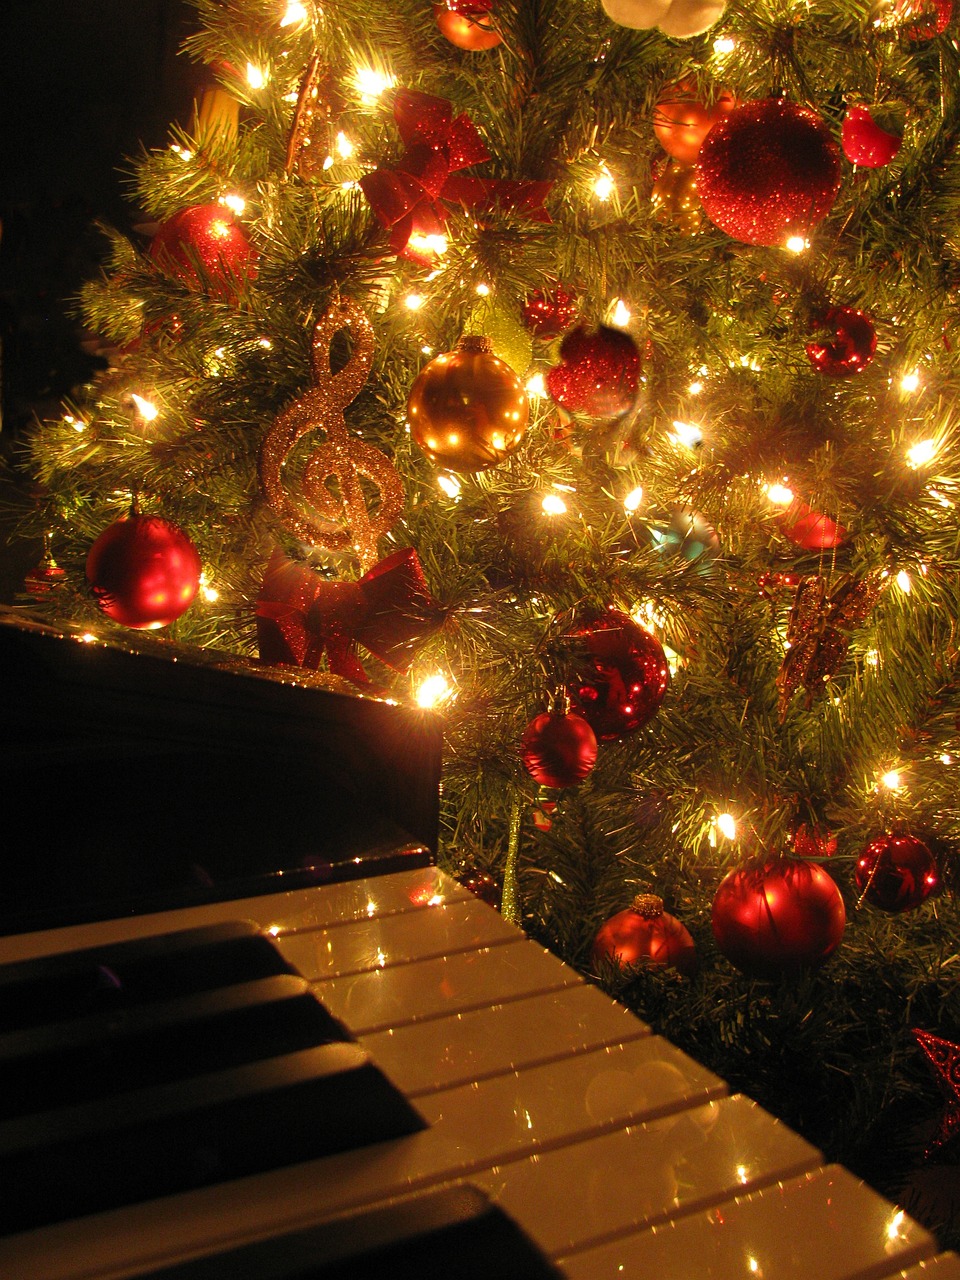 【山下達郎】人気クリスマスソングのピアノアレンジ動画まとめ【ドリカム】